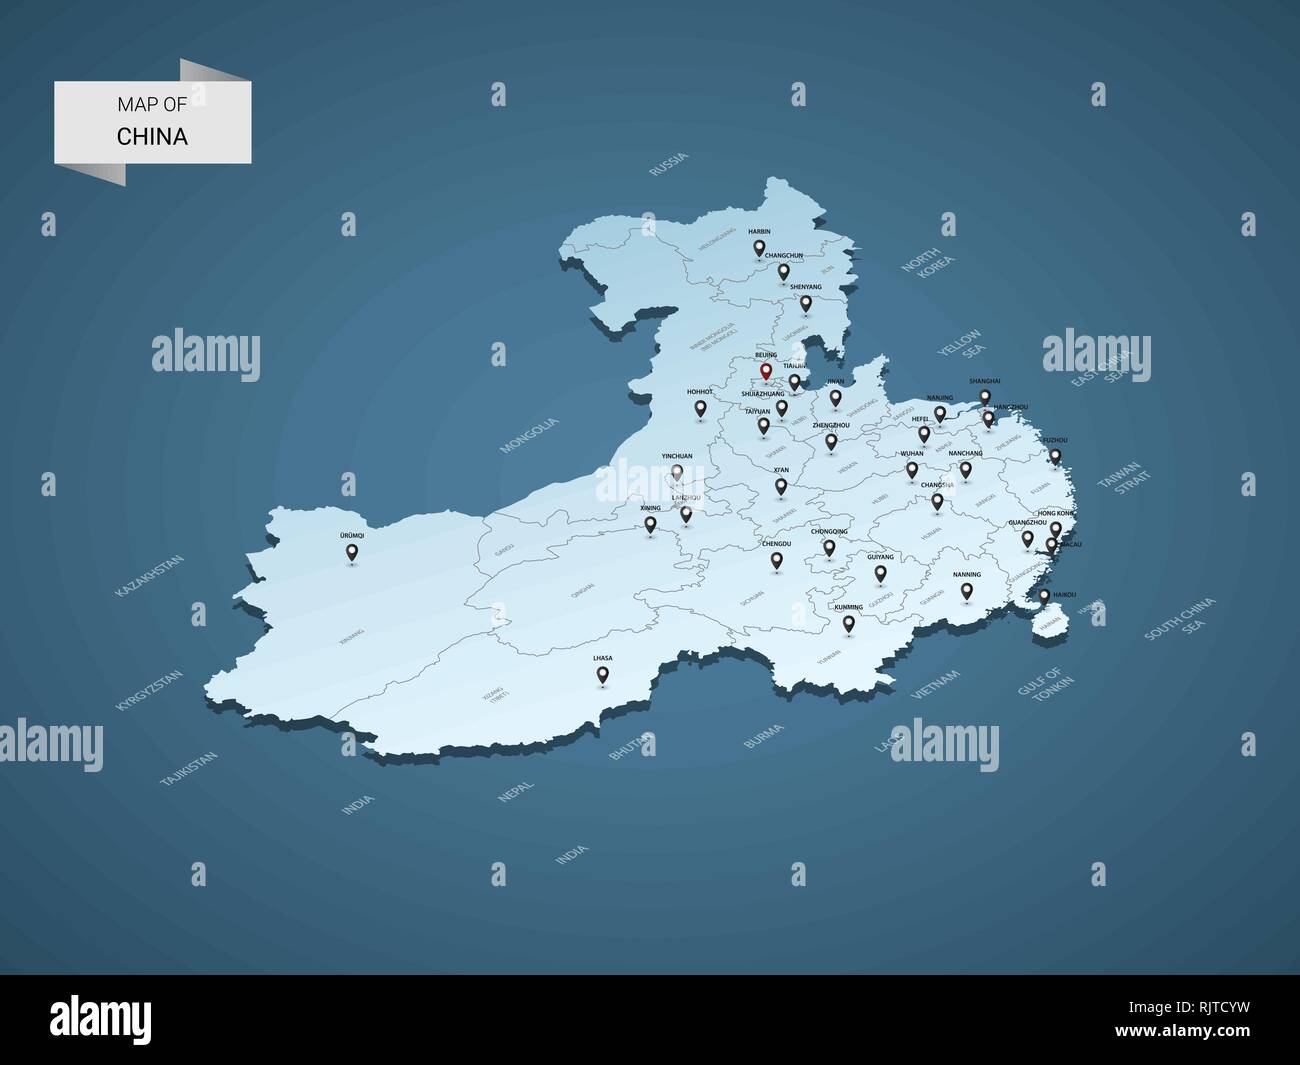 3D isométrique China map, vector illustration avec les villes, les frontières, les capitaux, les divisions administratives et marques ; pointeur fond bleu dégradé. Con Illustration de Vecteur